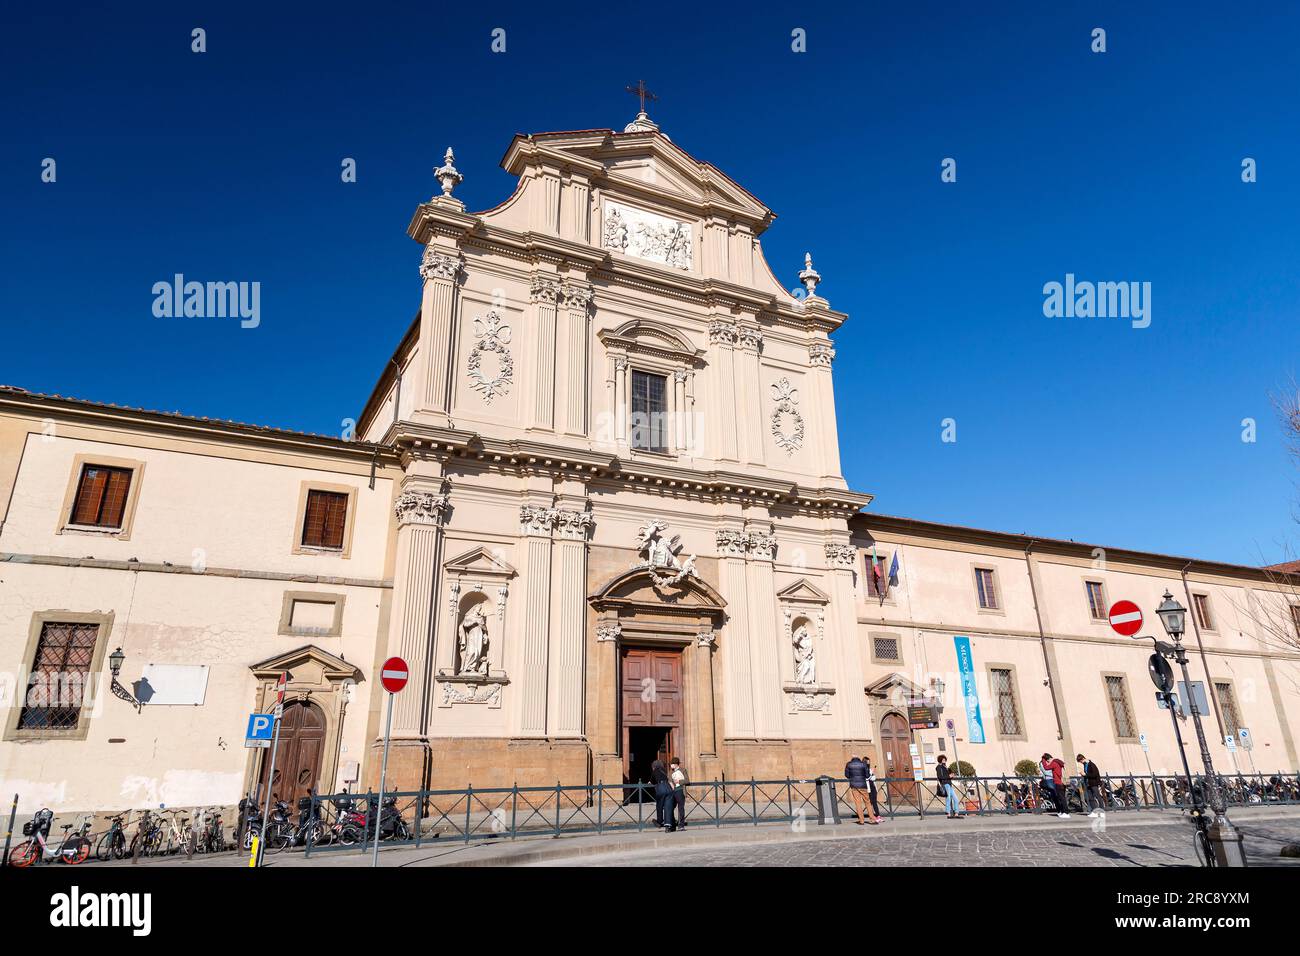 Florence, Italie - 6 avril 2022: La place Saint-Marc est une place dans la zone nord du centre historique de Florence, Italie Banque D'Images